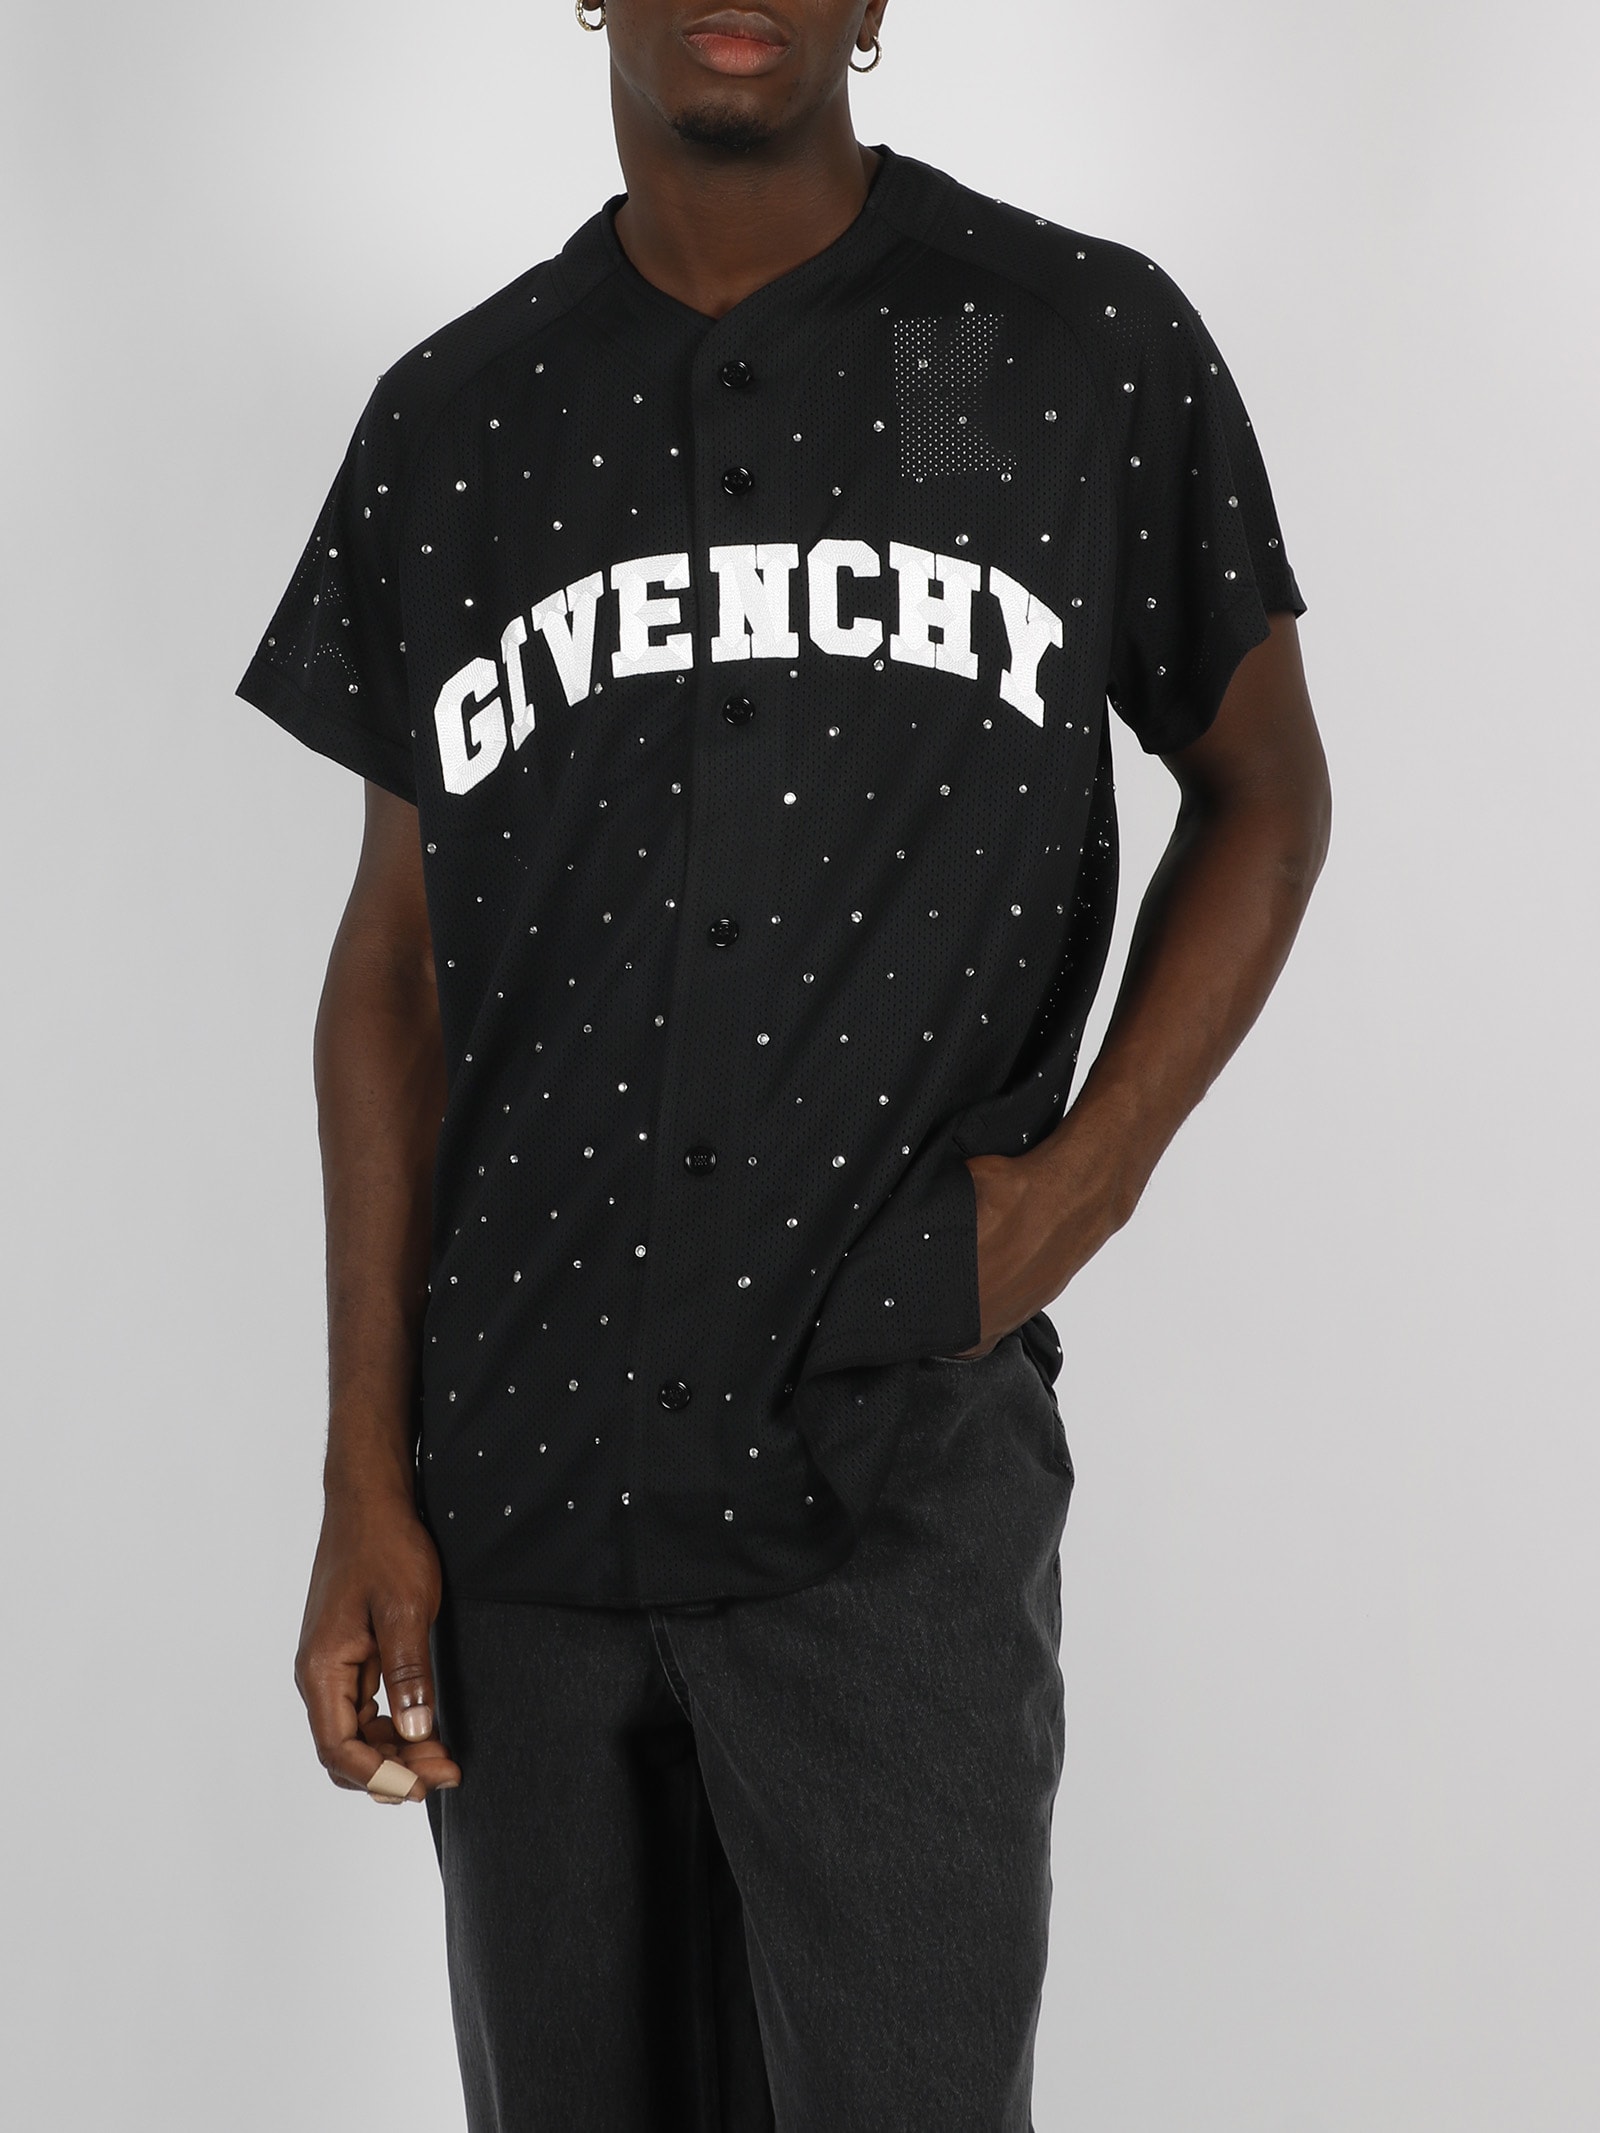 Givenchy x Josh Smith Devil Tee Givenchy